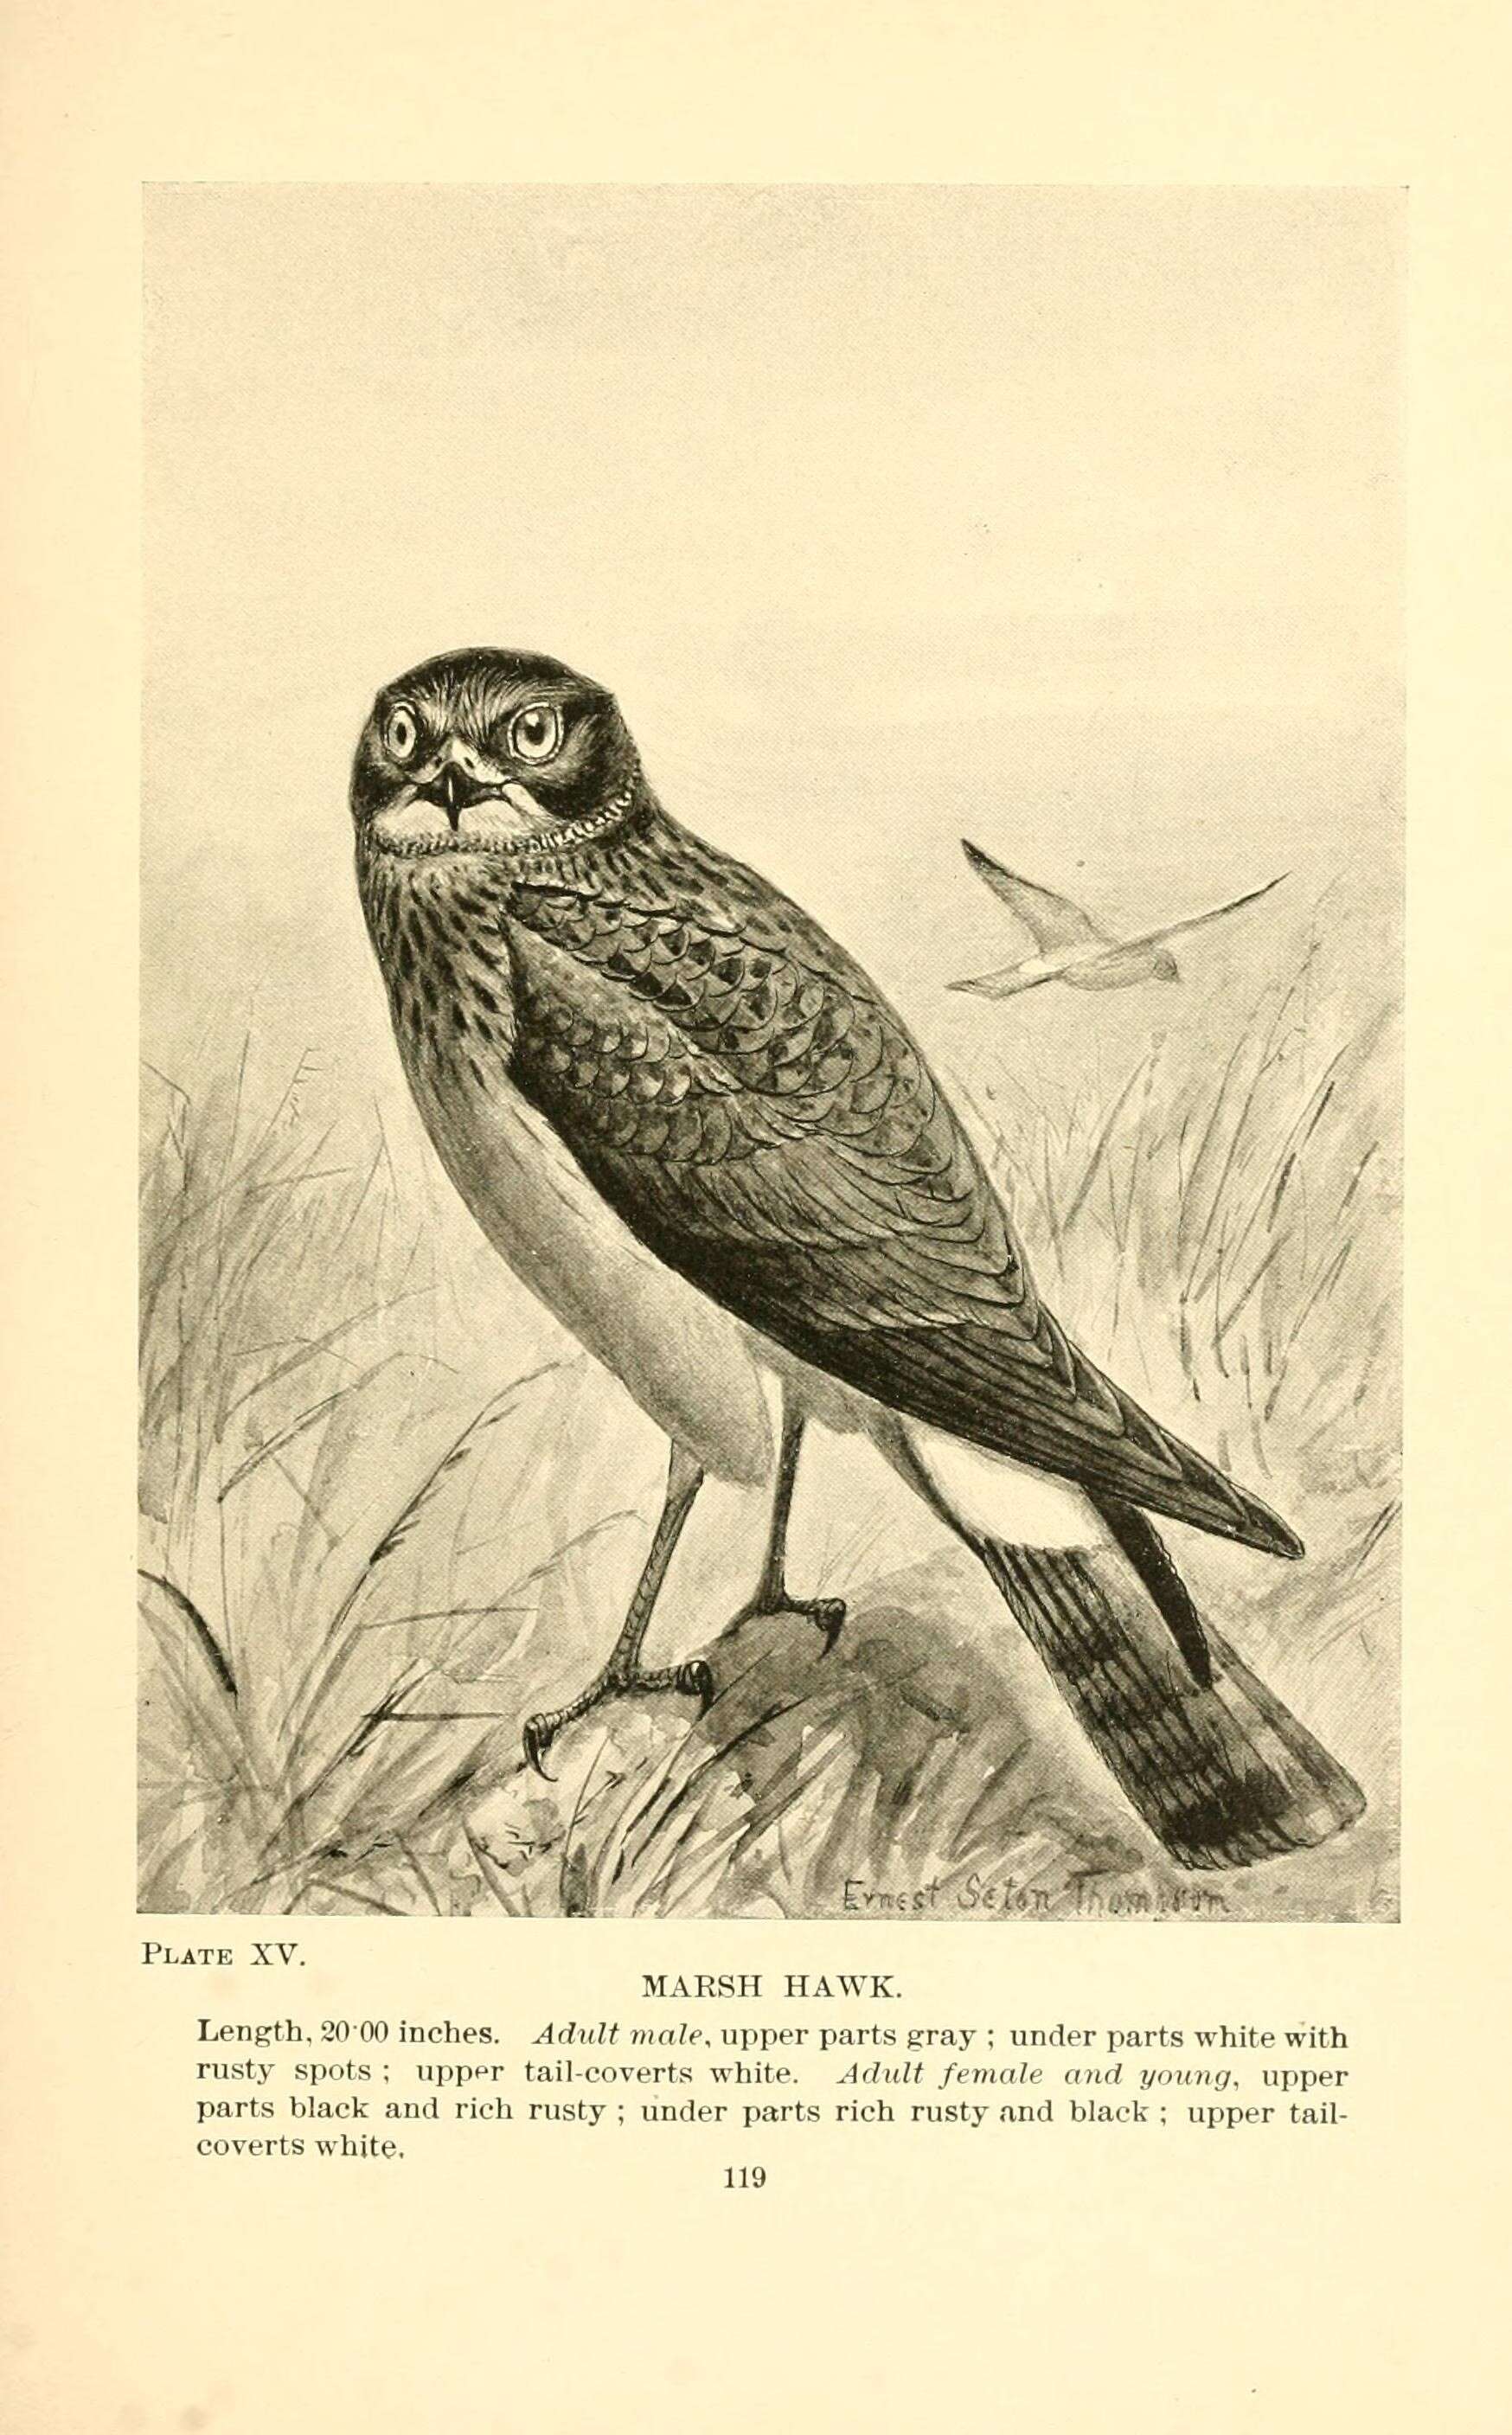 Image of Hen Harrier